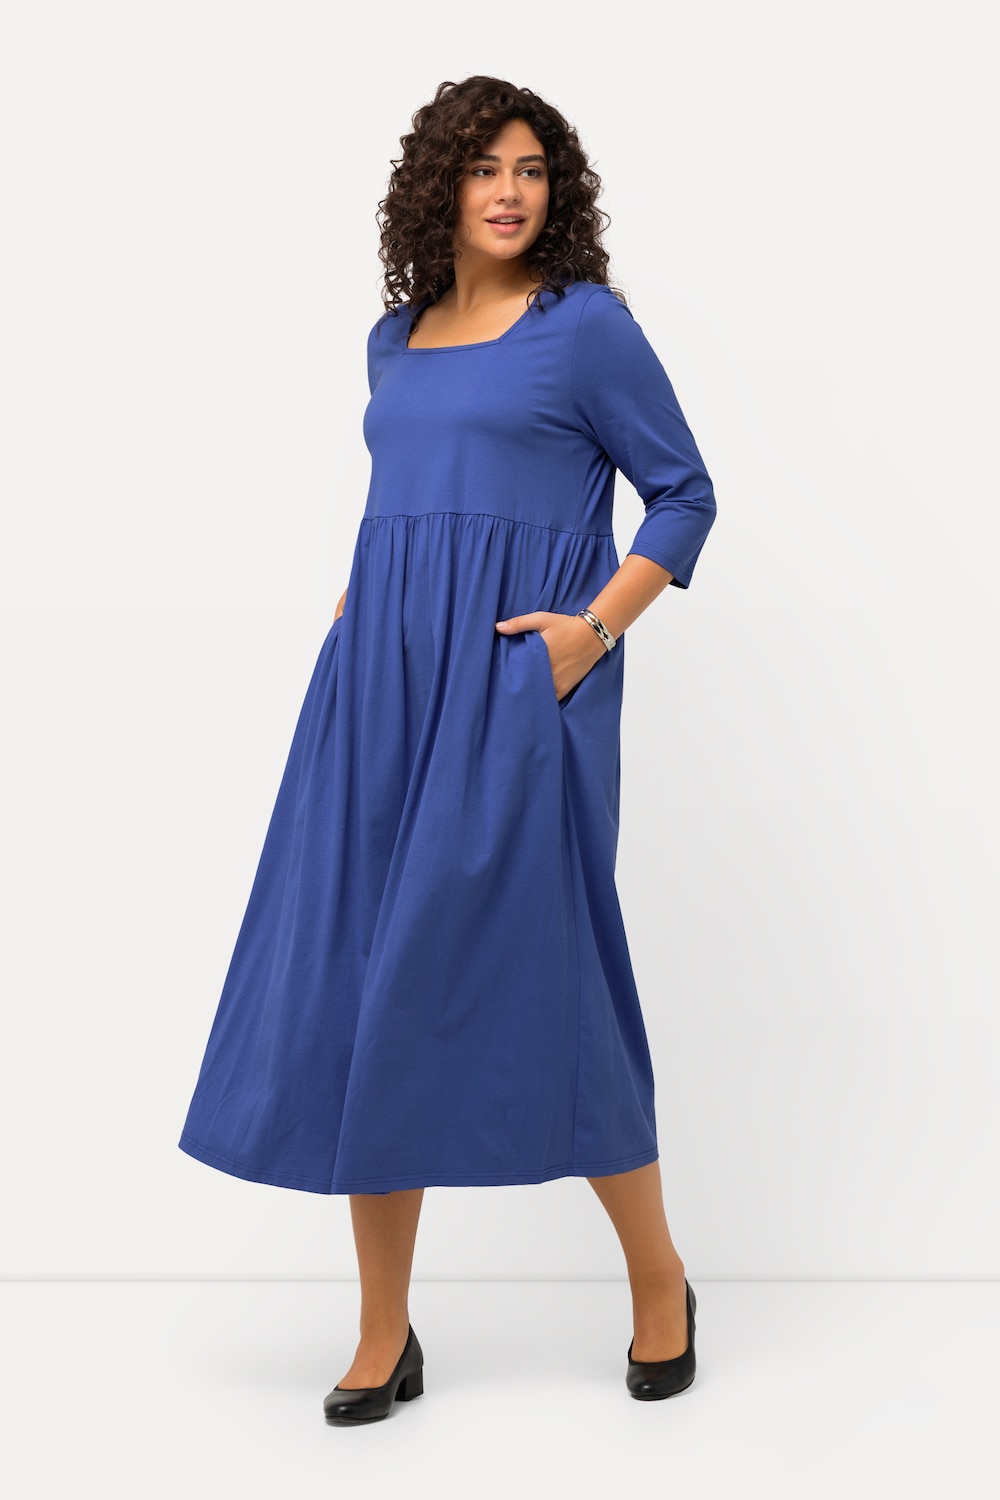 Grote Maten Jersey jurk, Dames, blauw, Maat: 42/44, Katoen, Ulla Popken